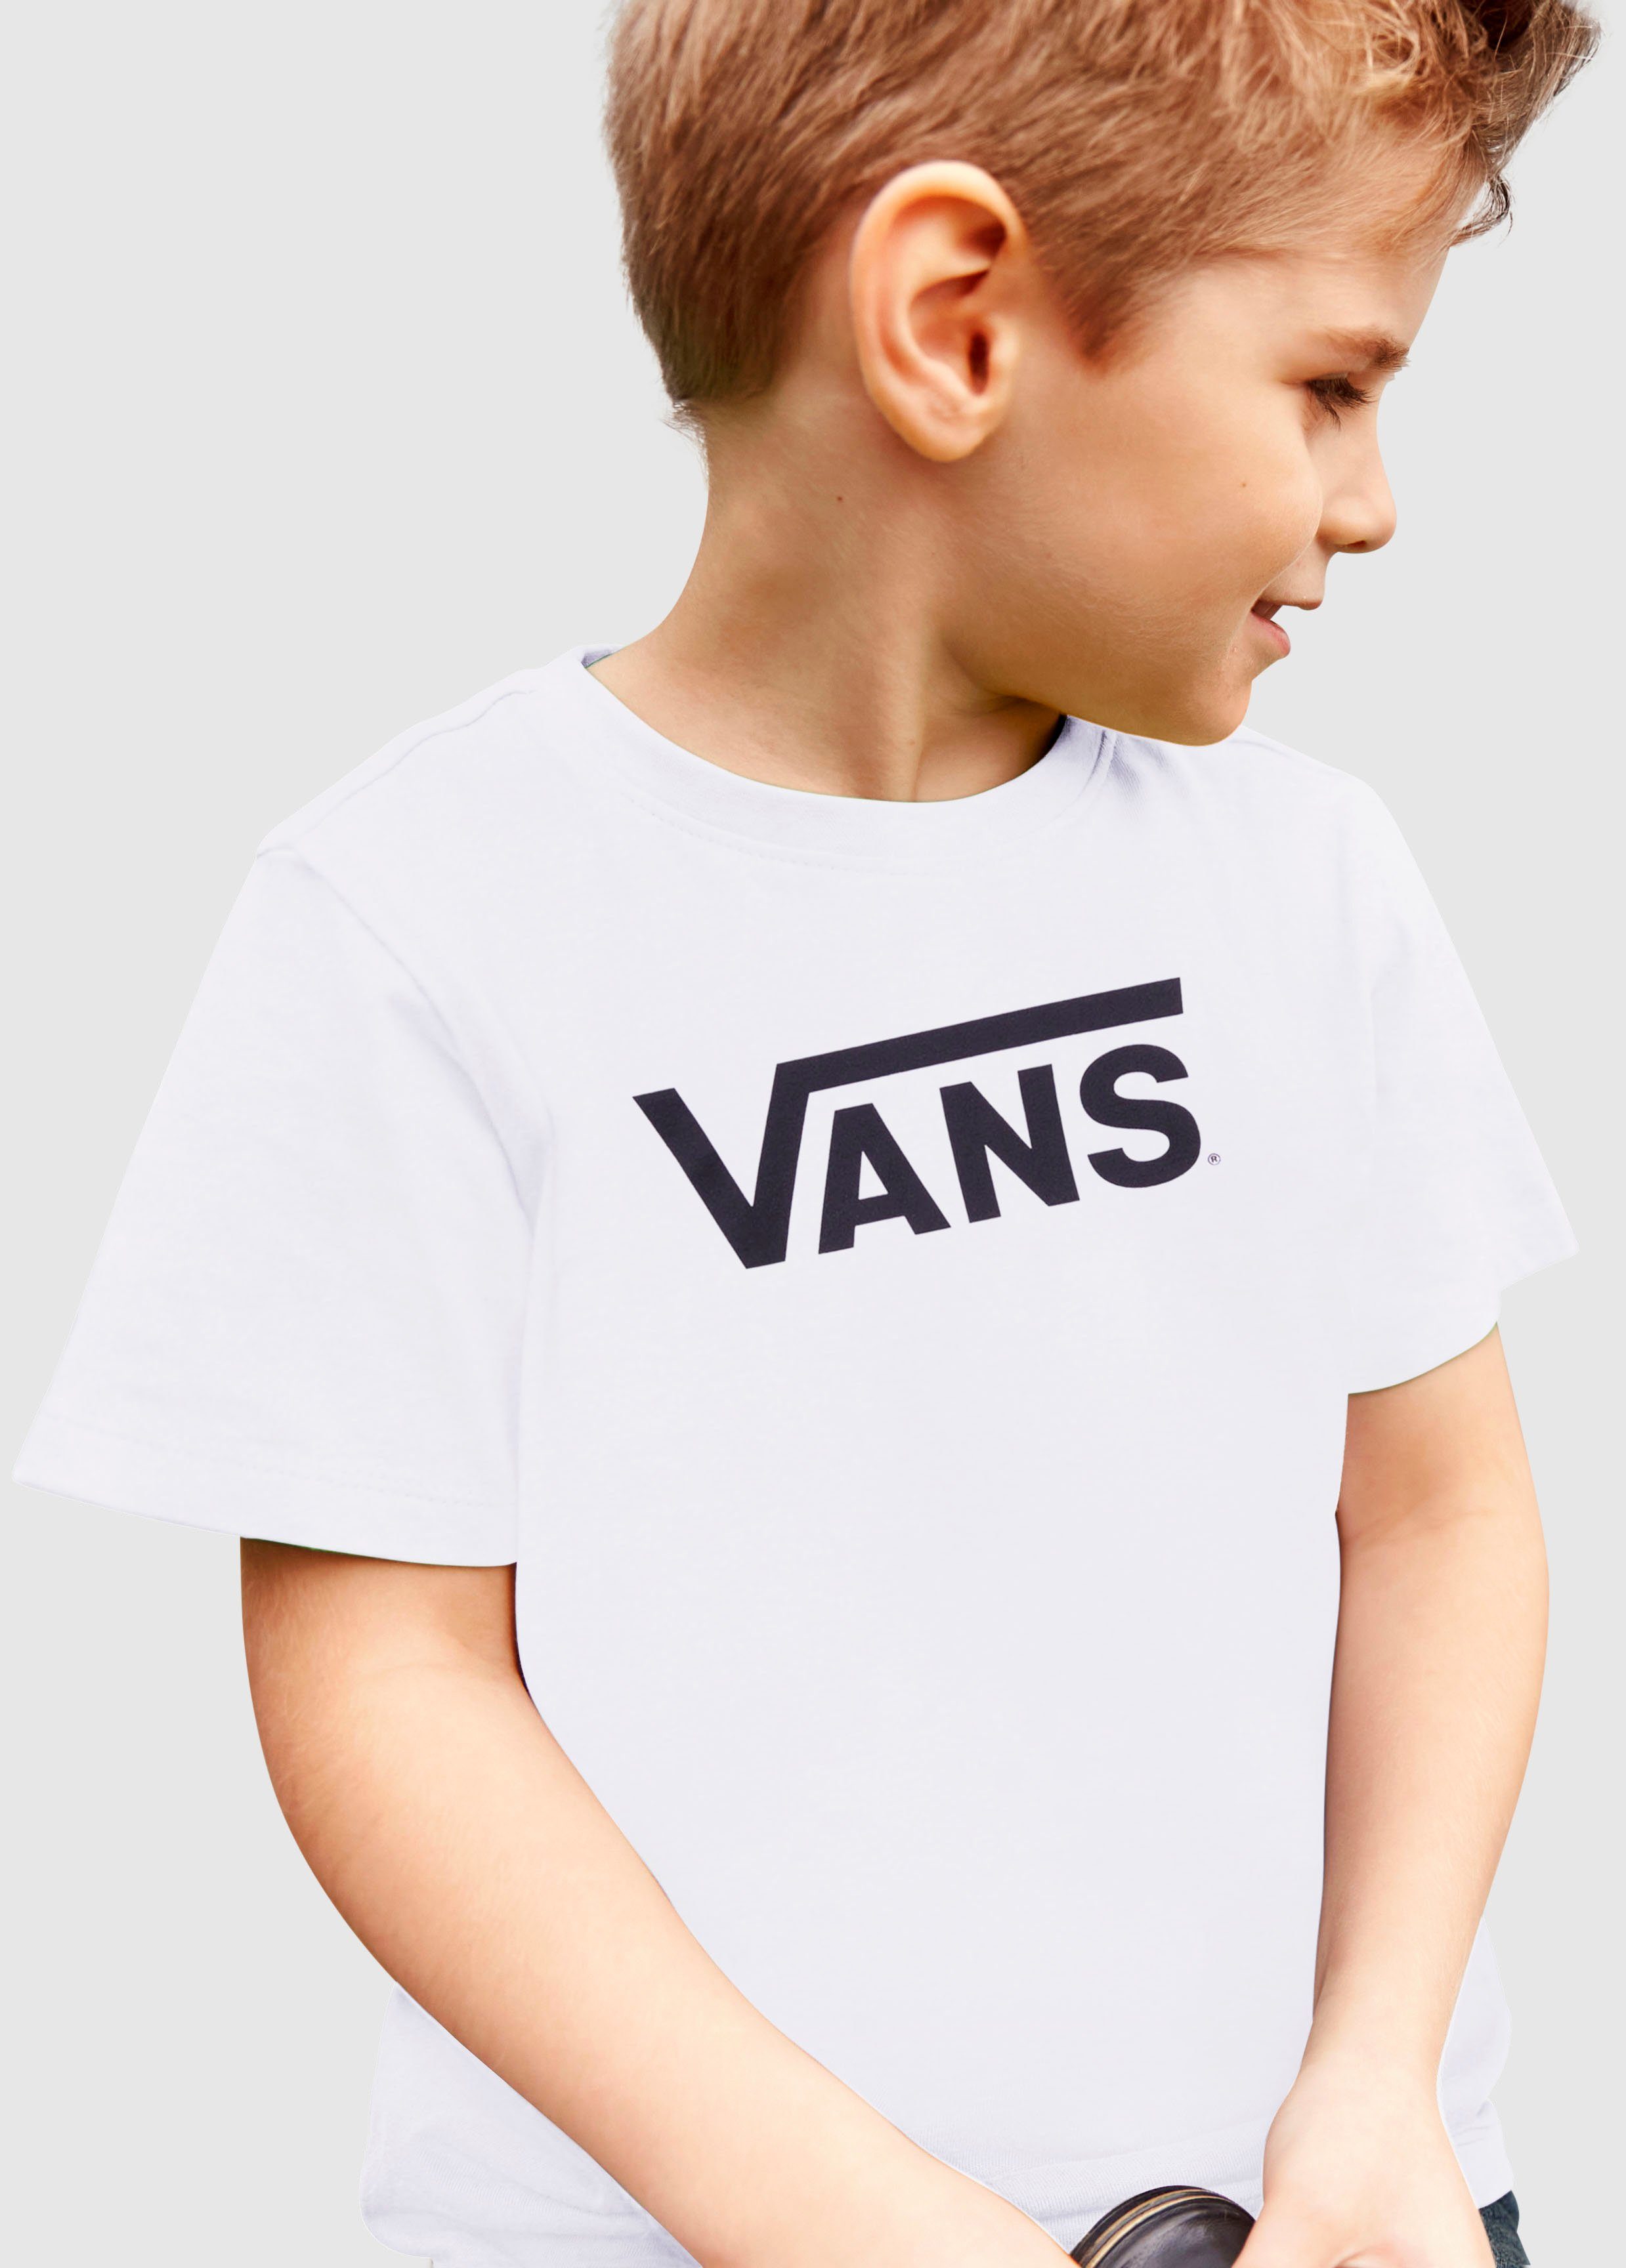 VANS T-shirt met logo wit-zwart